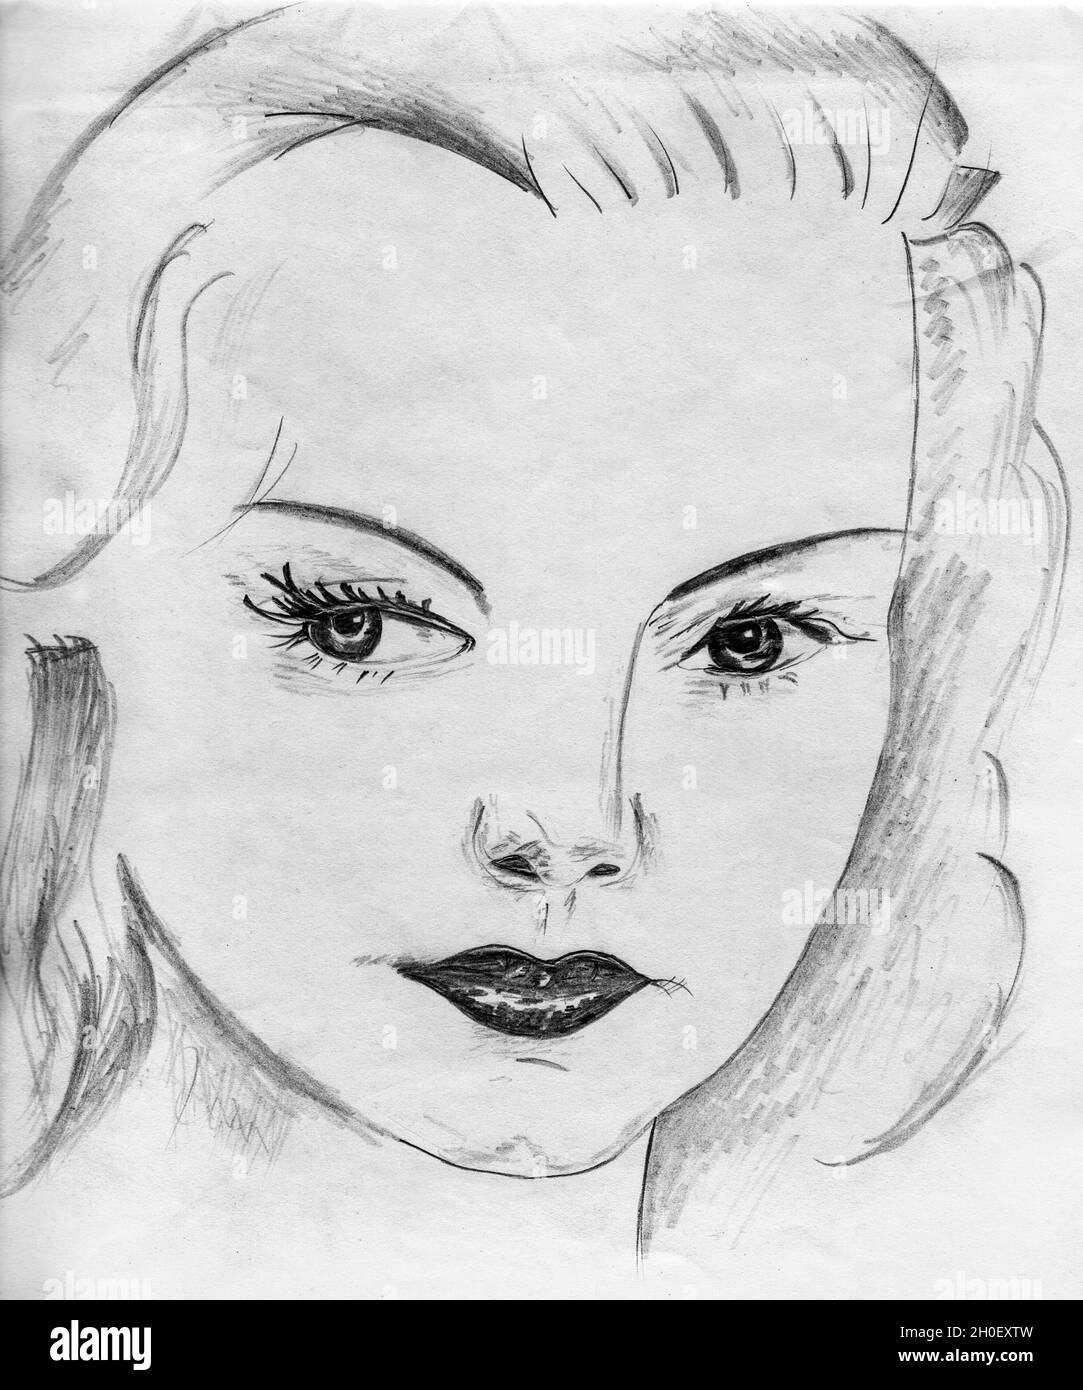 Représentation artistique d'une femme sophistiquée qui ressemble à une star de cinéma hollywoodienne des années 40.Dessin au crayon. Banque D'Images